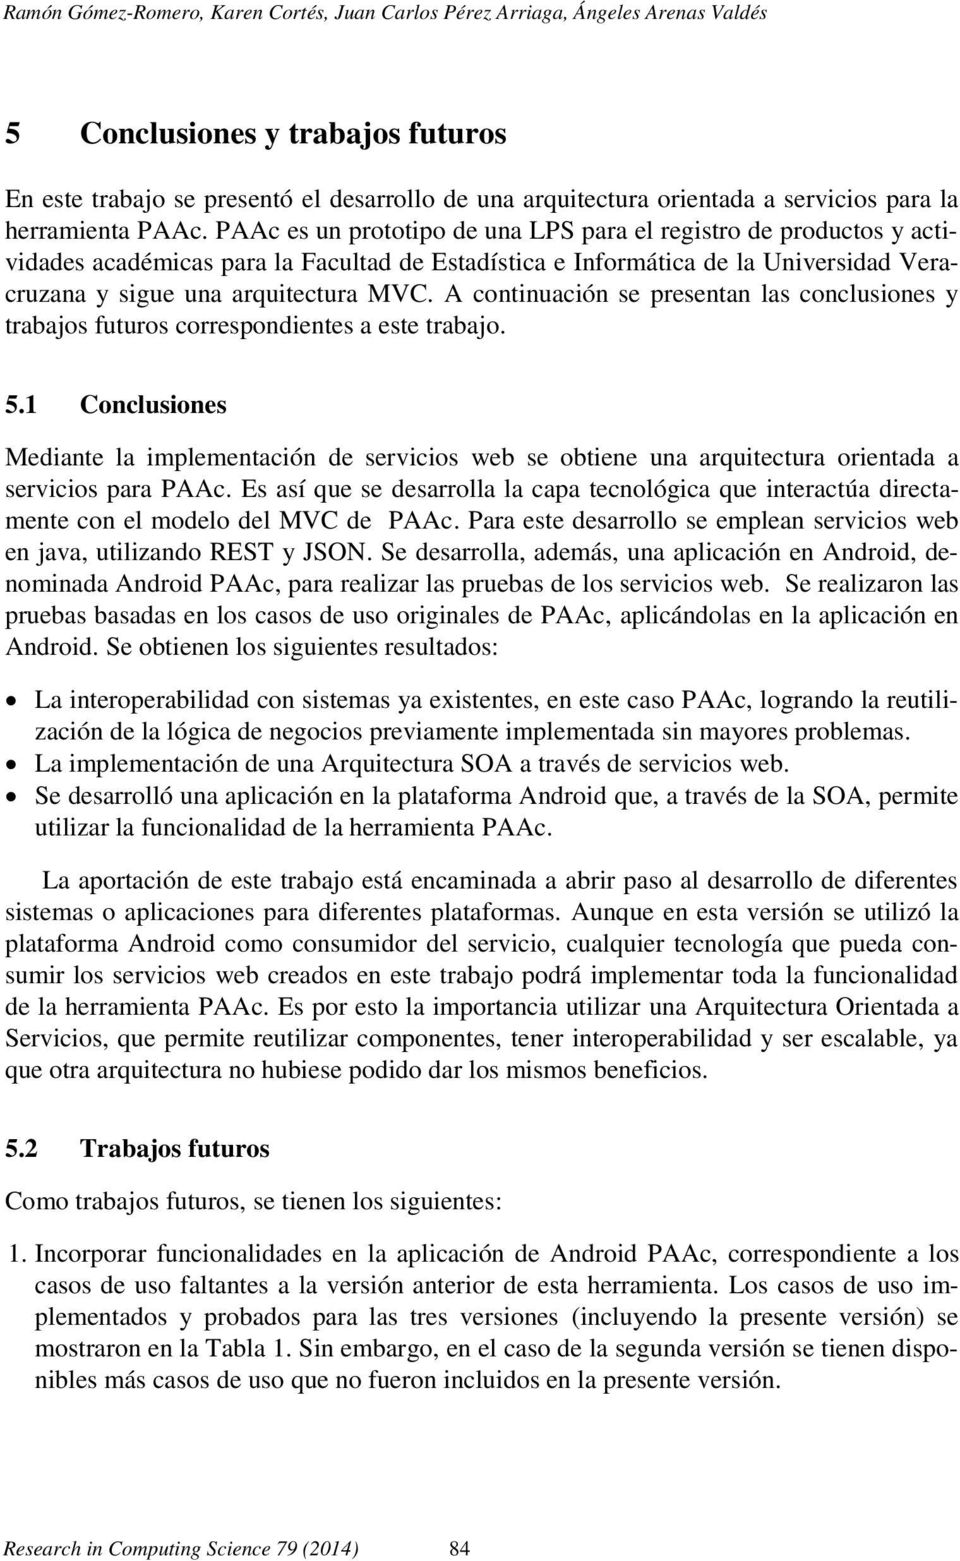 PAAc es un prototipo de una LPS para el registro de productos y actividades académicas para la Facultad de Estadística e Informática de la Universidad Veracruzana y sigue una arquitectura MVC.